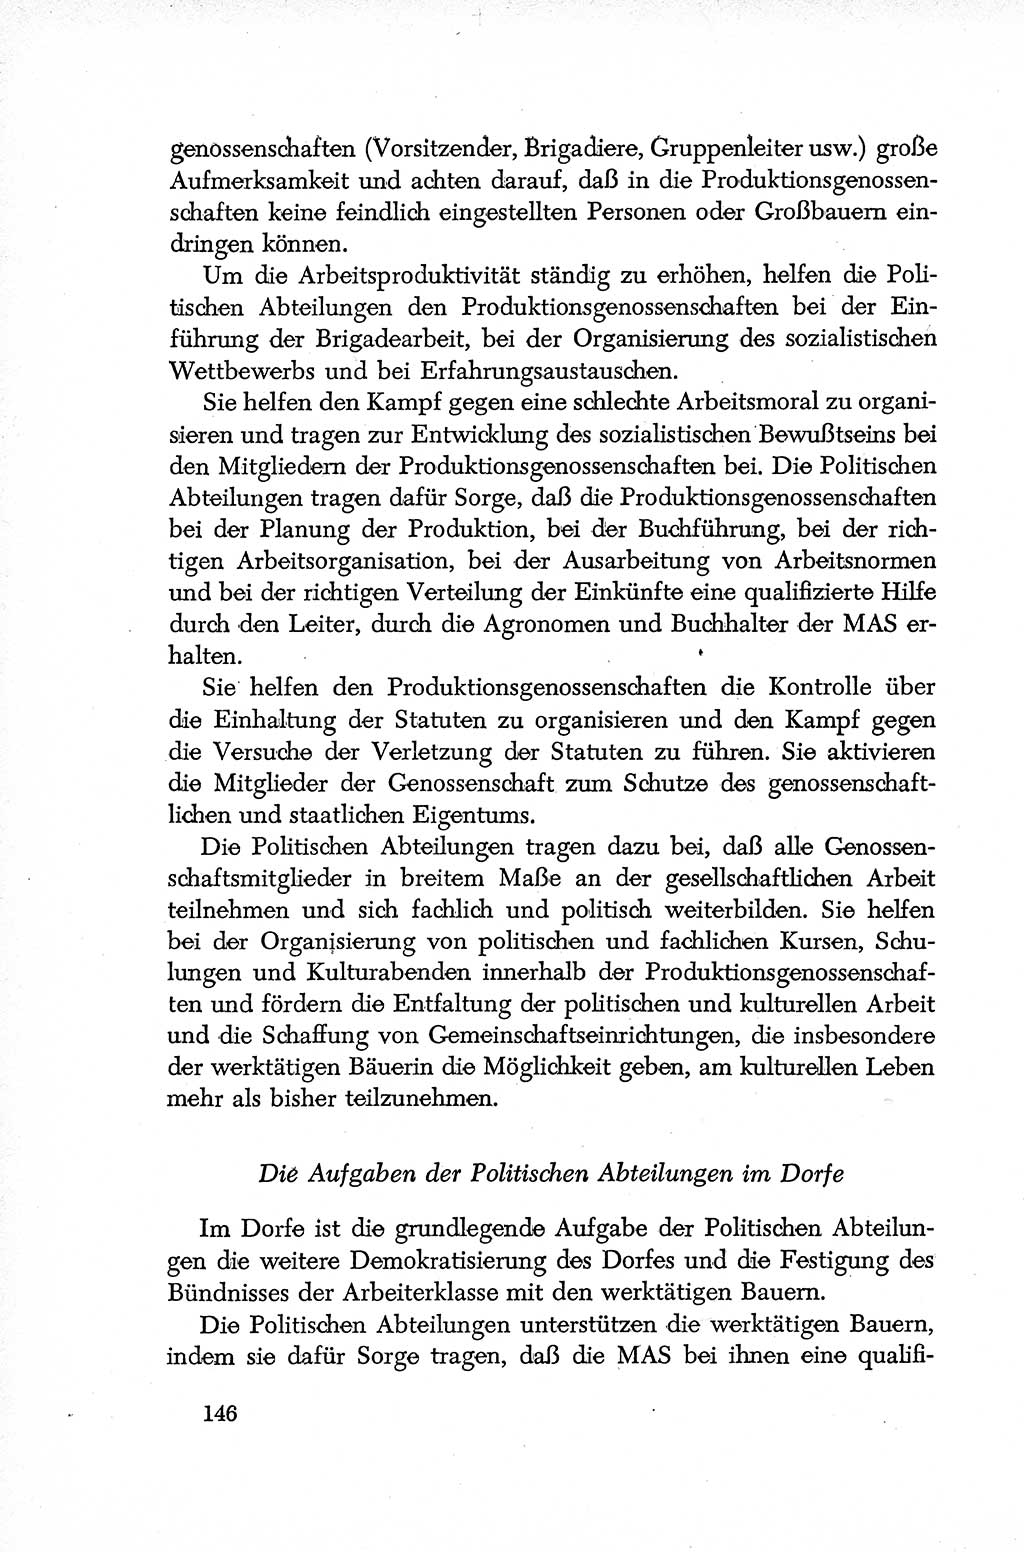 Dokumente der Sozialistischen Einheitspartei Deutschlands (SED) [Deutsche Demokratische Republik (DDR)] 1952-1953, Seite 146 (Dok. SED DDR 1952-1953, S. 146)